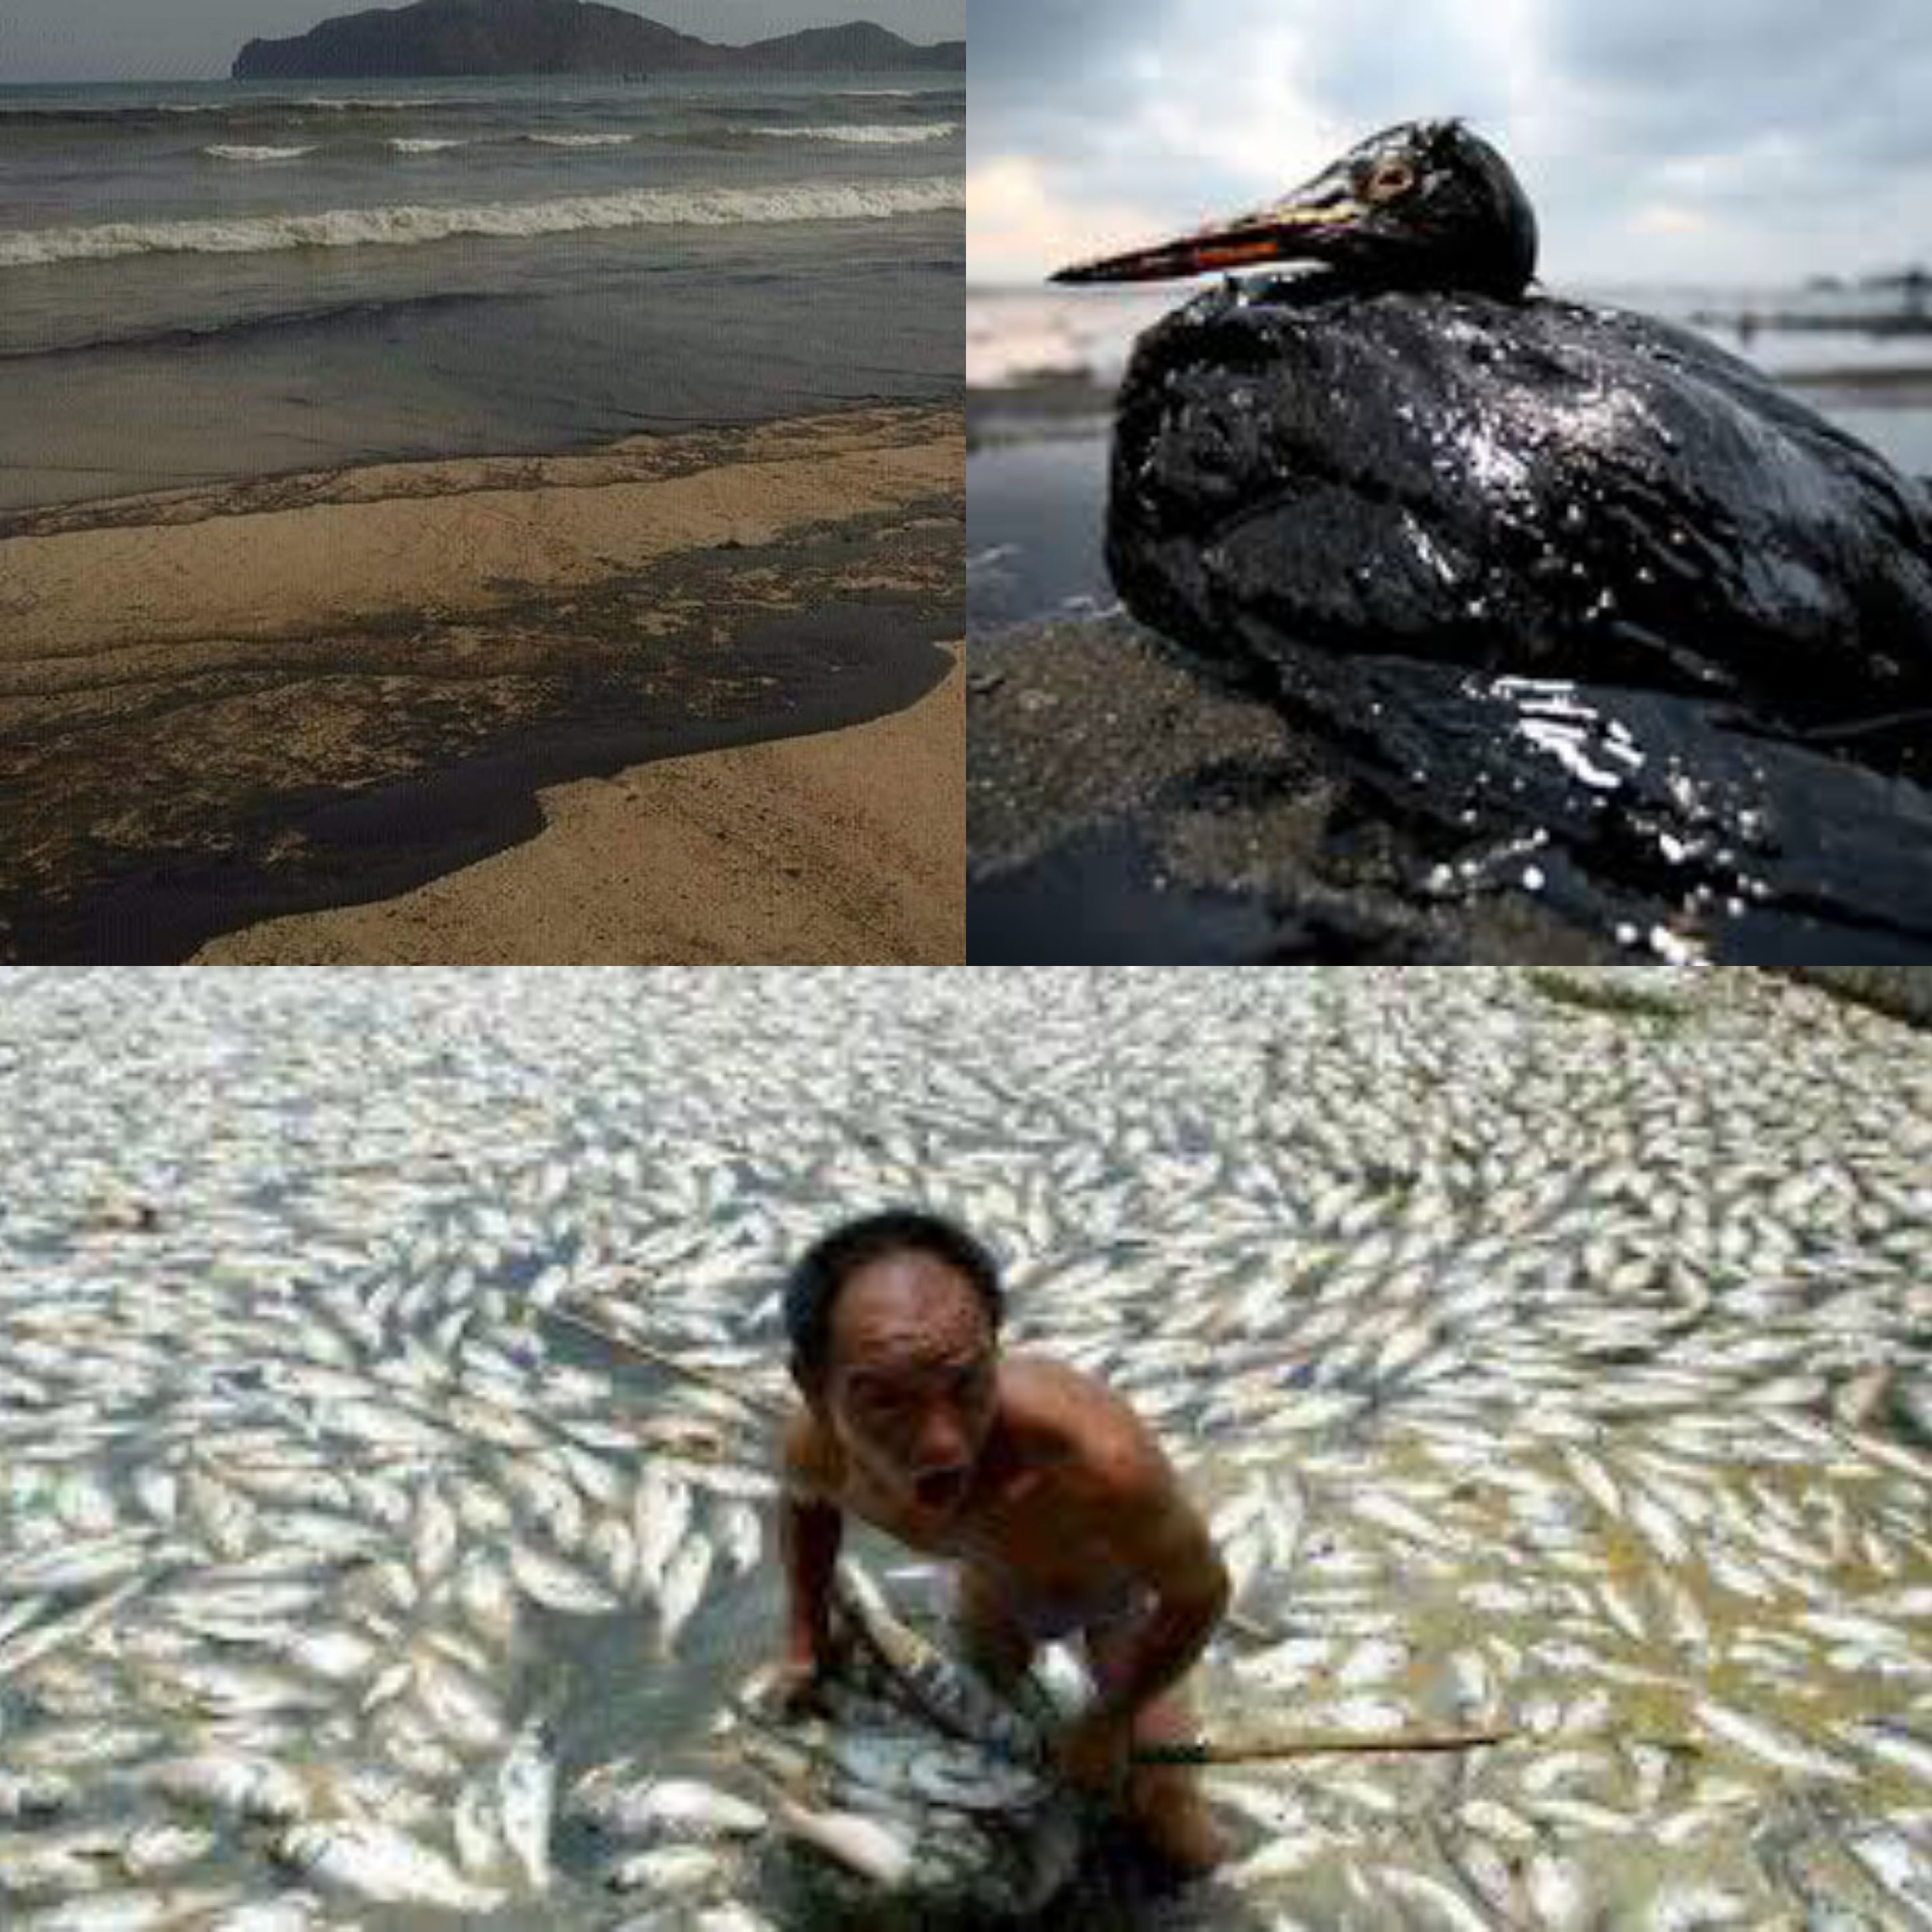 مركز الرصد والتثقيف البيئي يحمل الحكومة مسؤولية التلوث البيئي في السواحل اليمنية ..!!